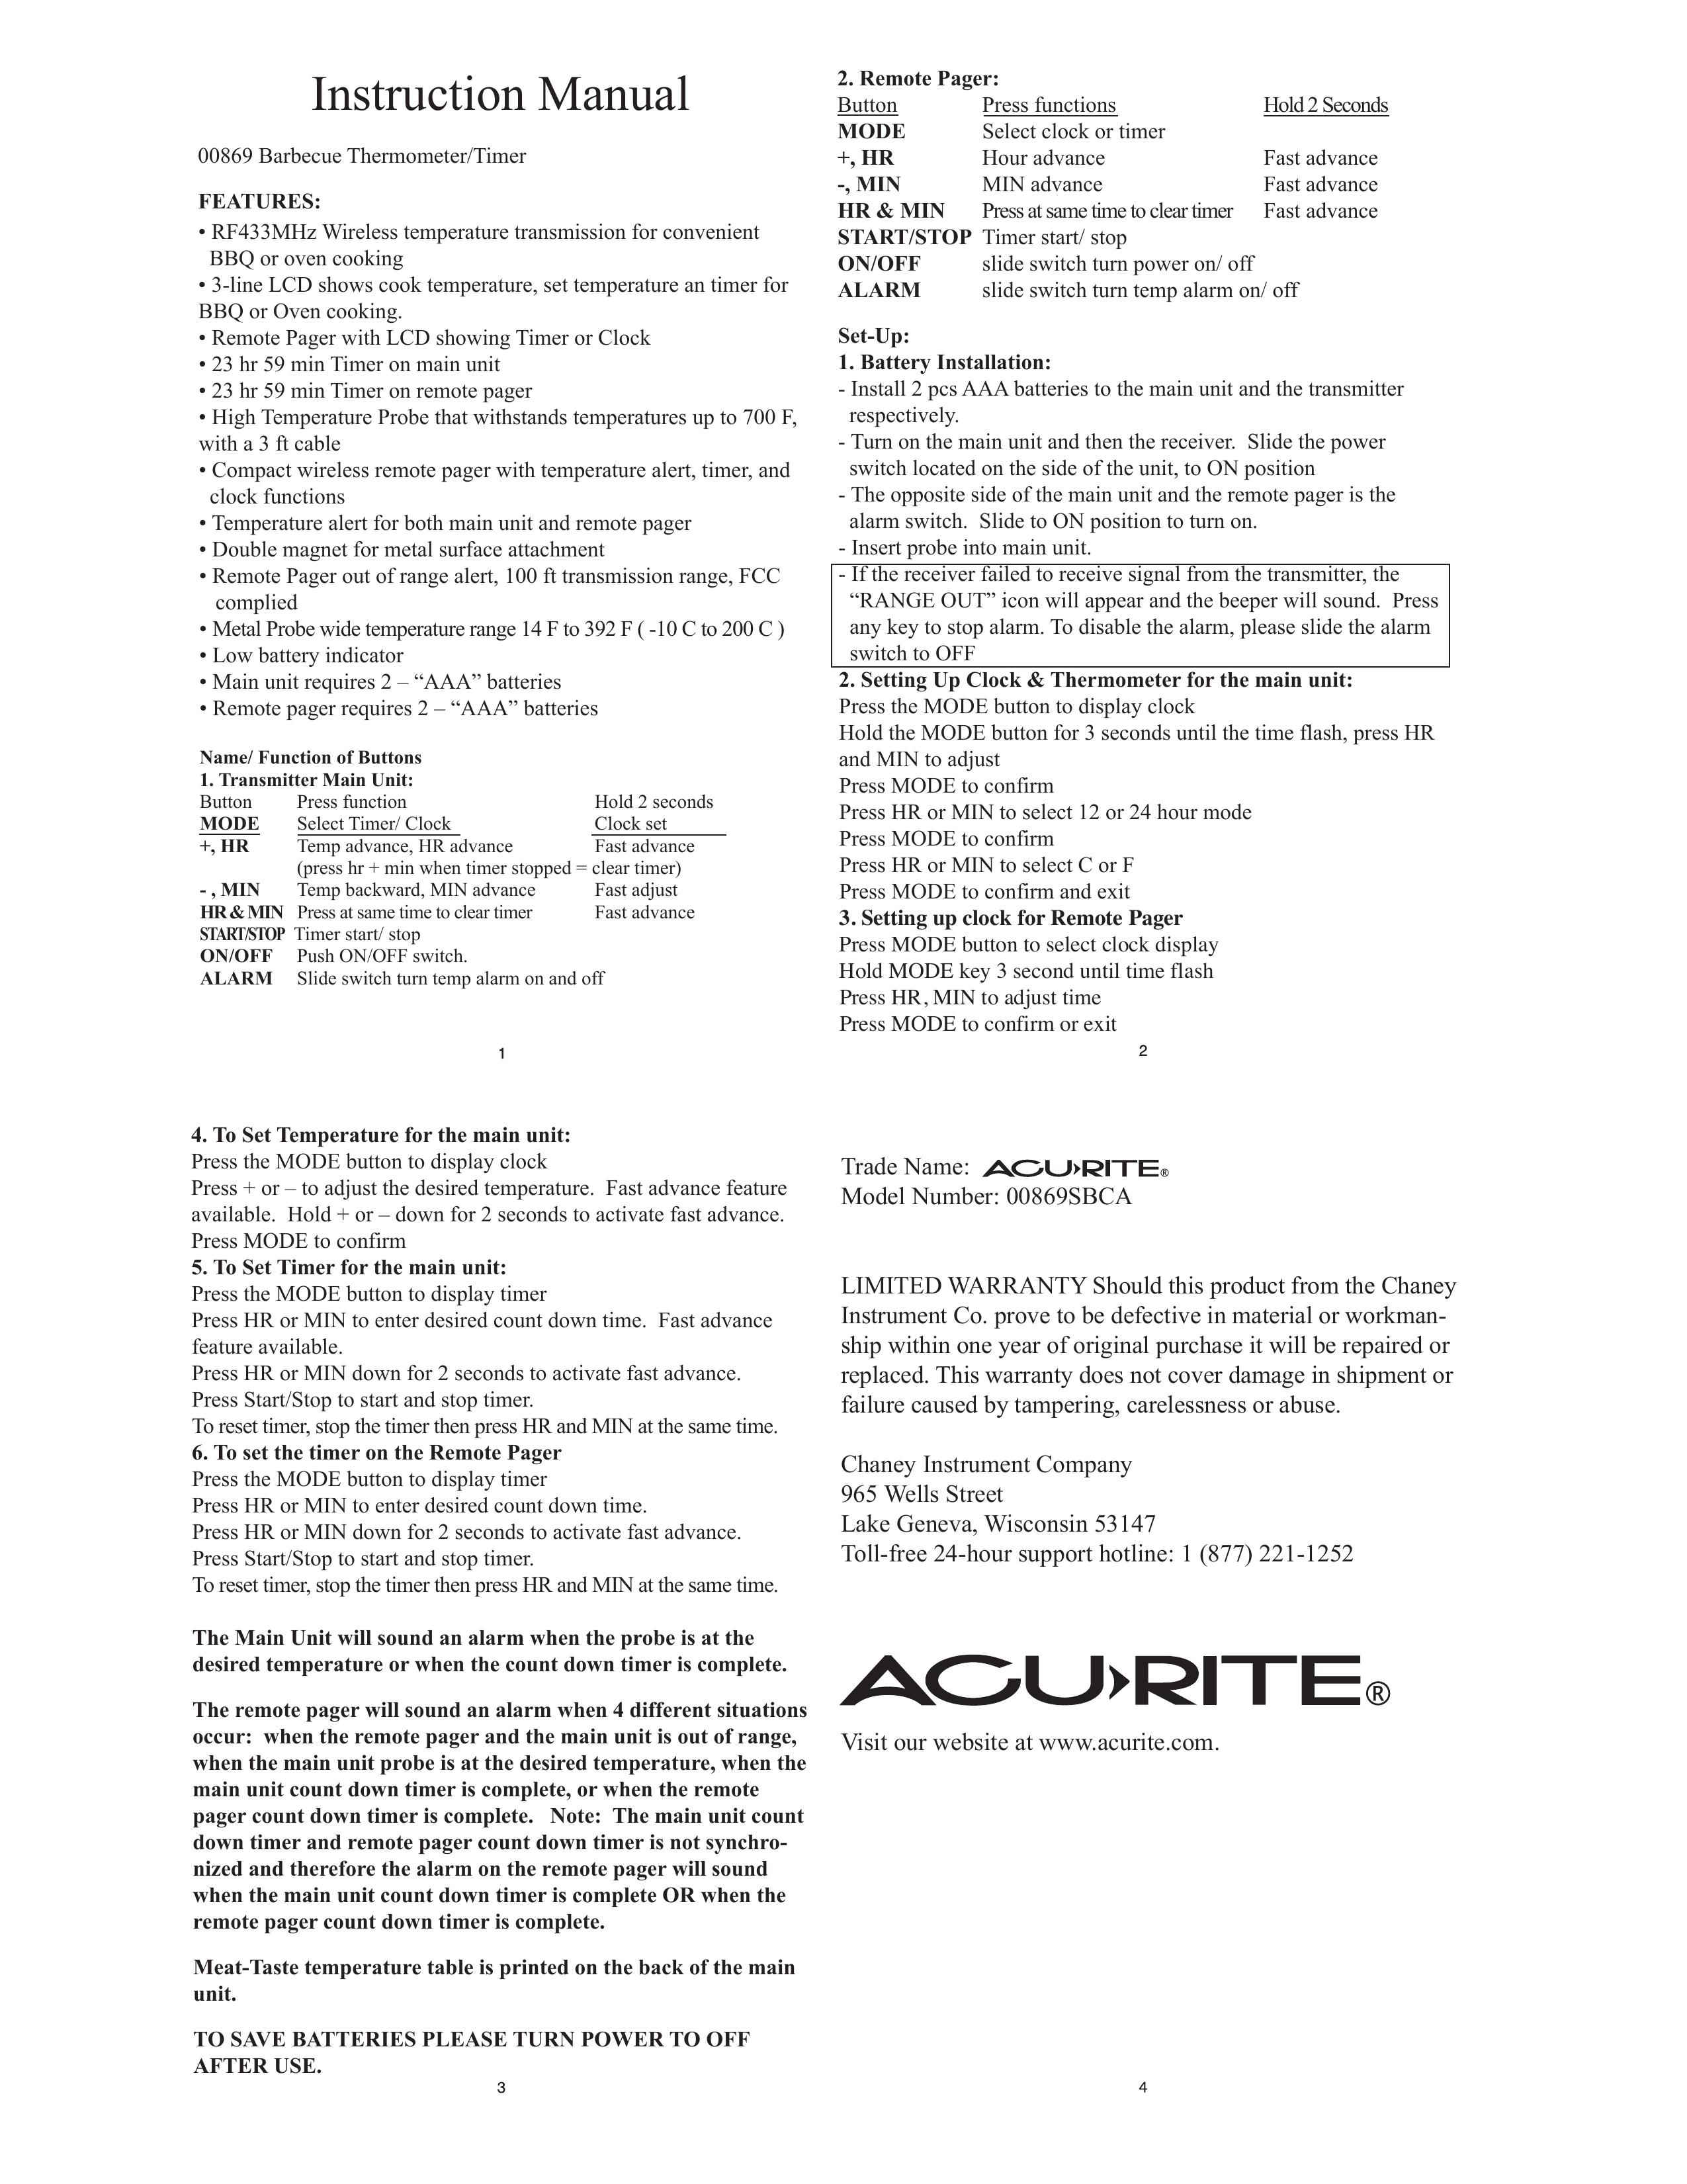 Acu-Rite 869 Grill Accessory User Manual